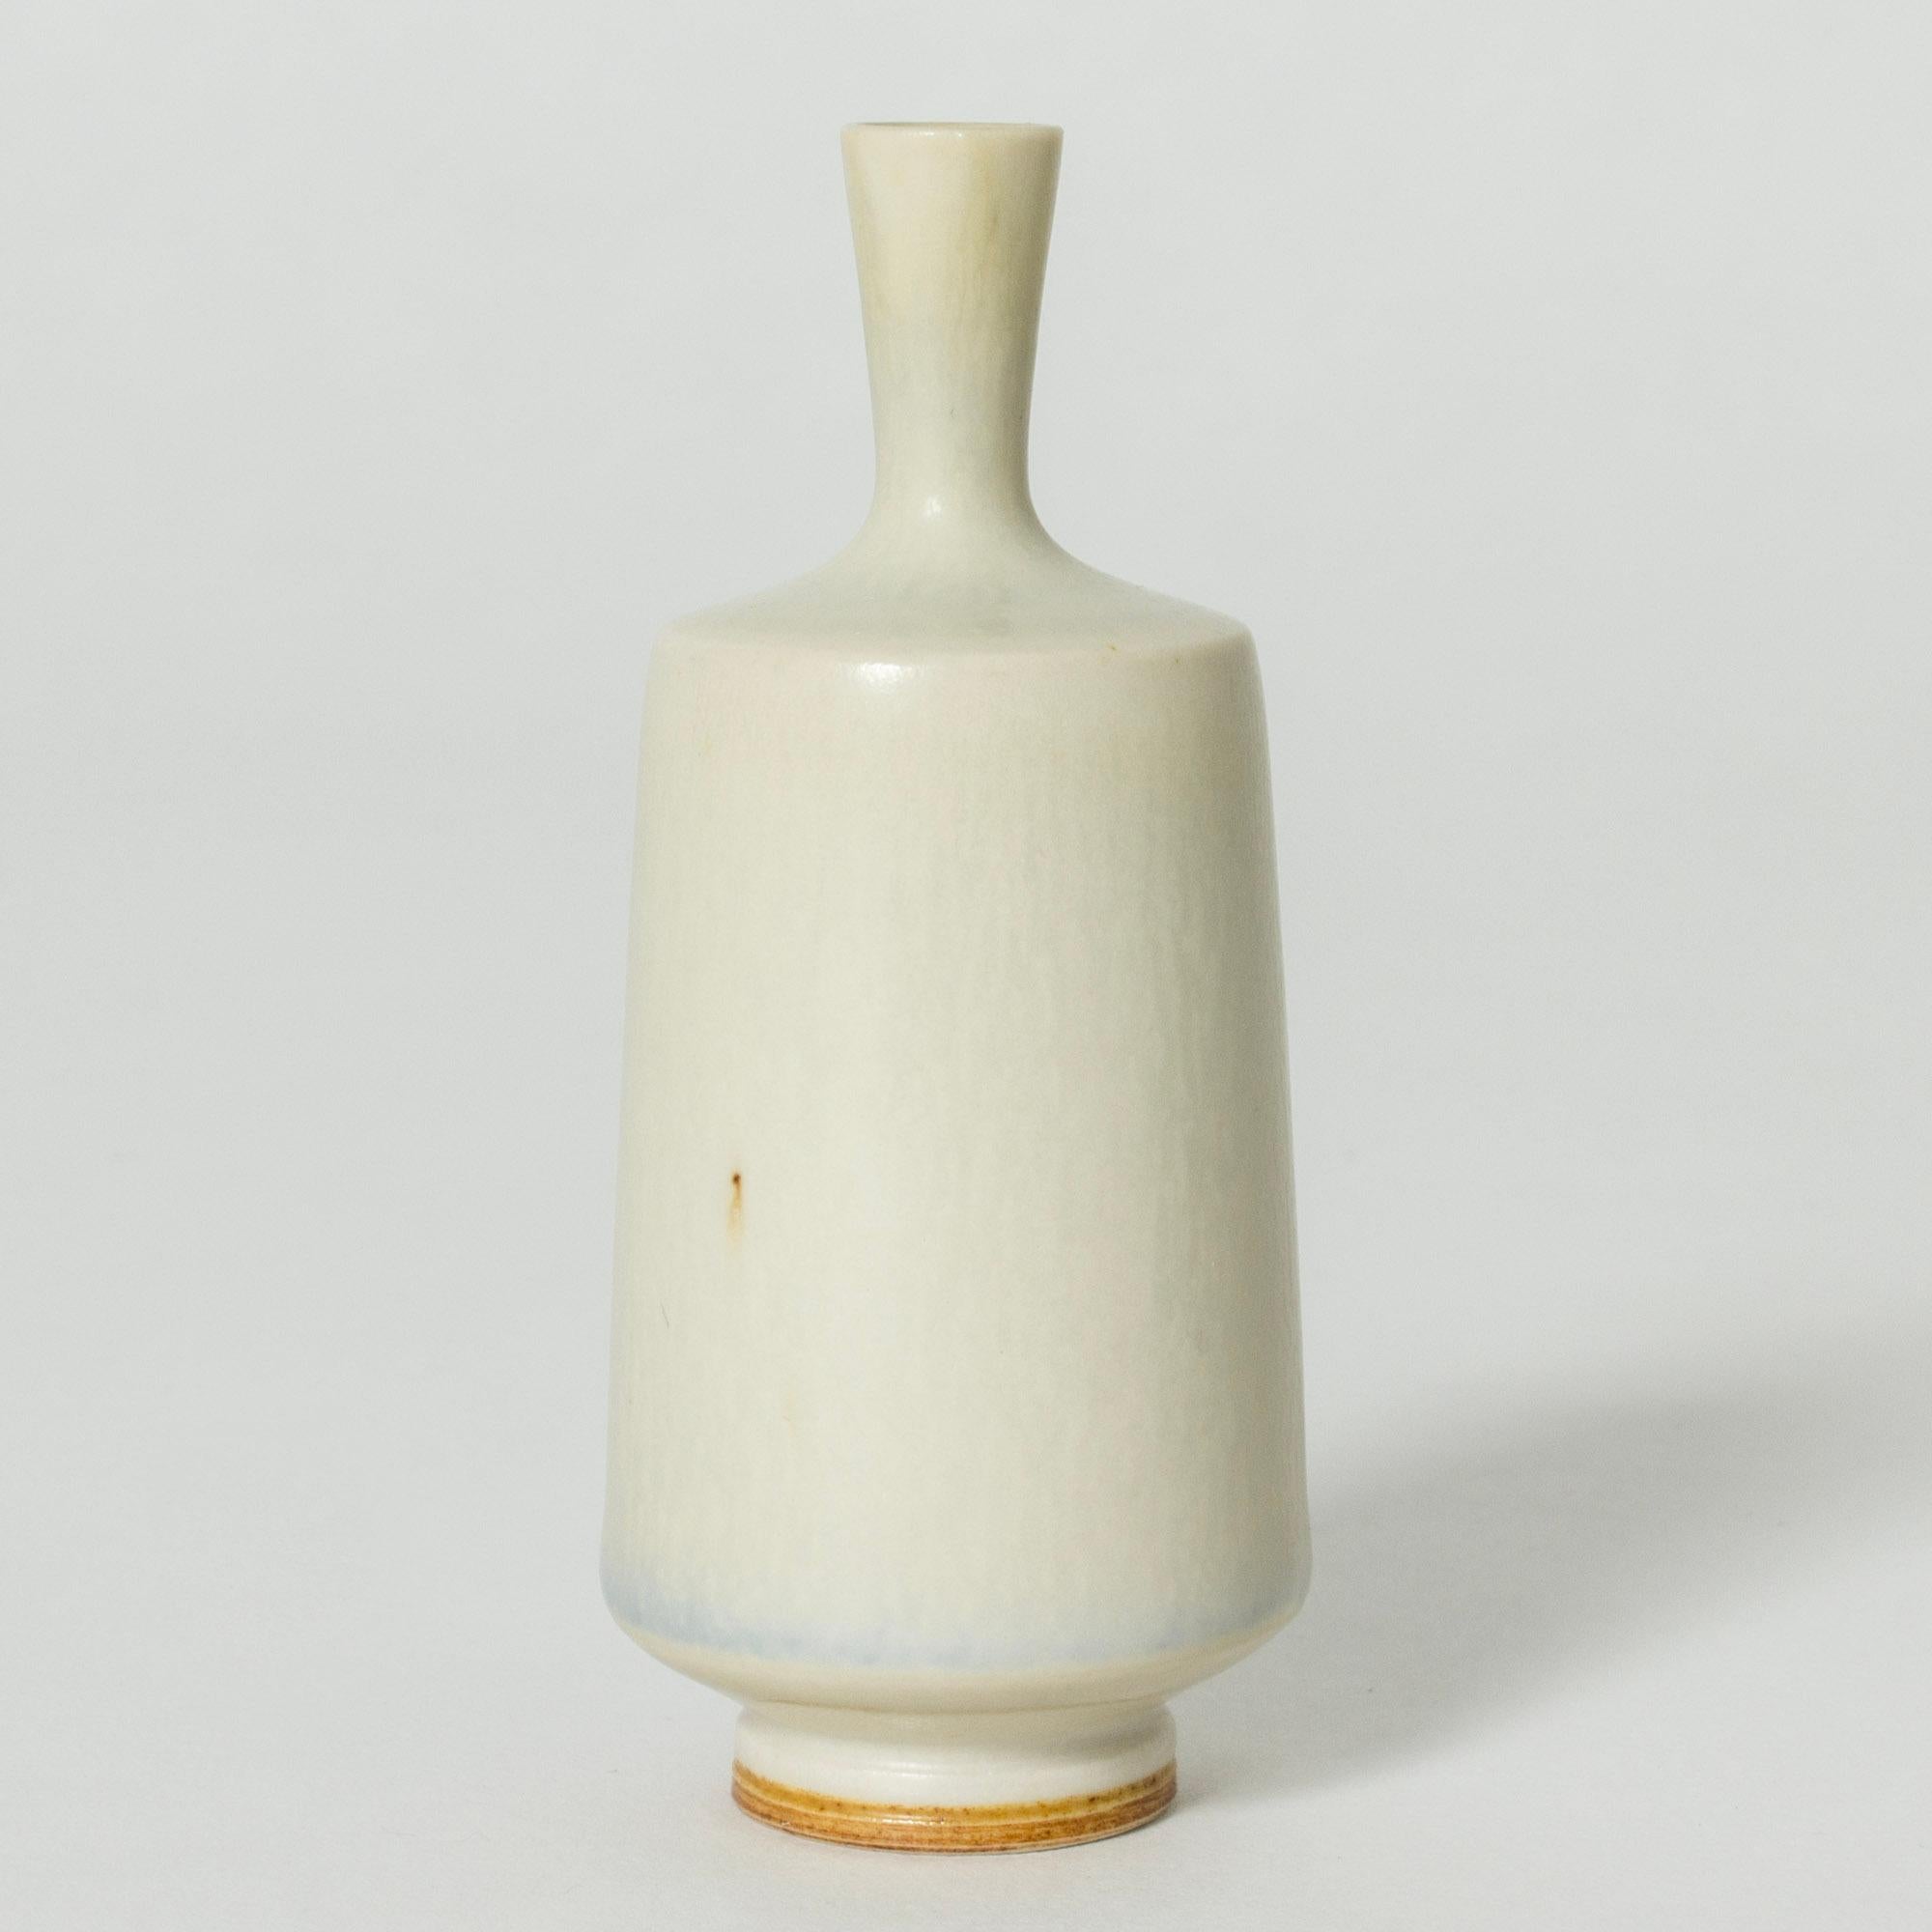 Vase aus Steingut von Berndt Friberg, saubere Zylinderform, mit weißer Hasenfellglasur. Weiße Vasen von Friberg sind besonders selten und begehrt.

Berndt Friberg war ein schwedischer Keramiker, der für seine Steinzeugvasen und -gefäße für